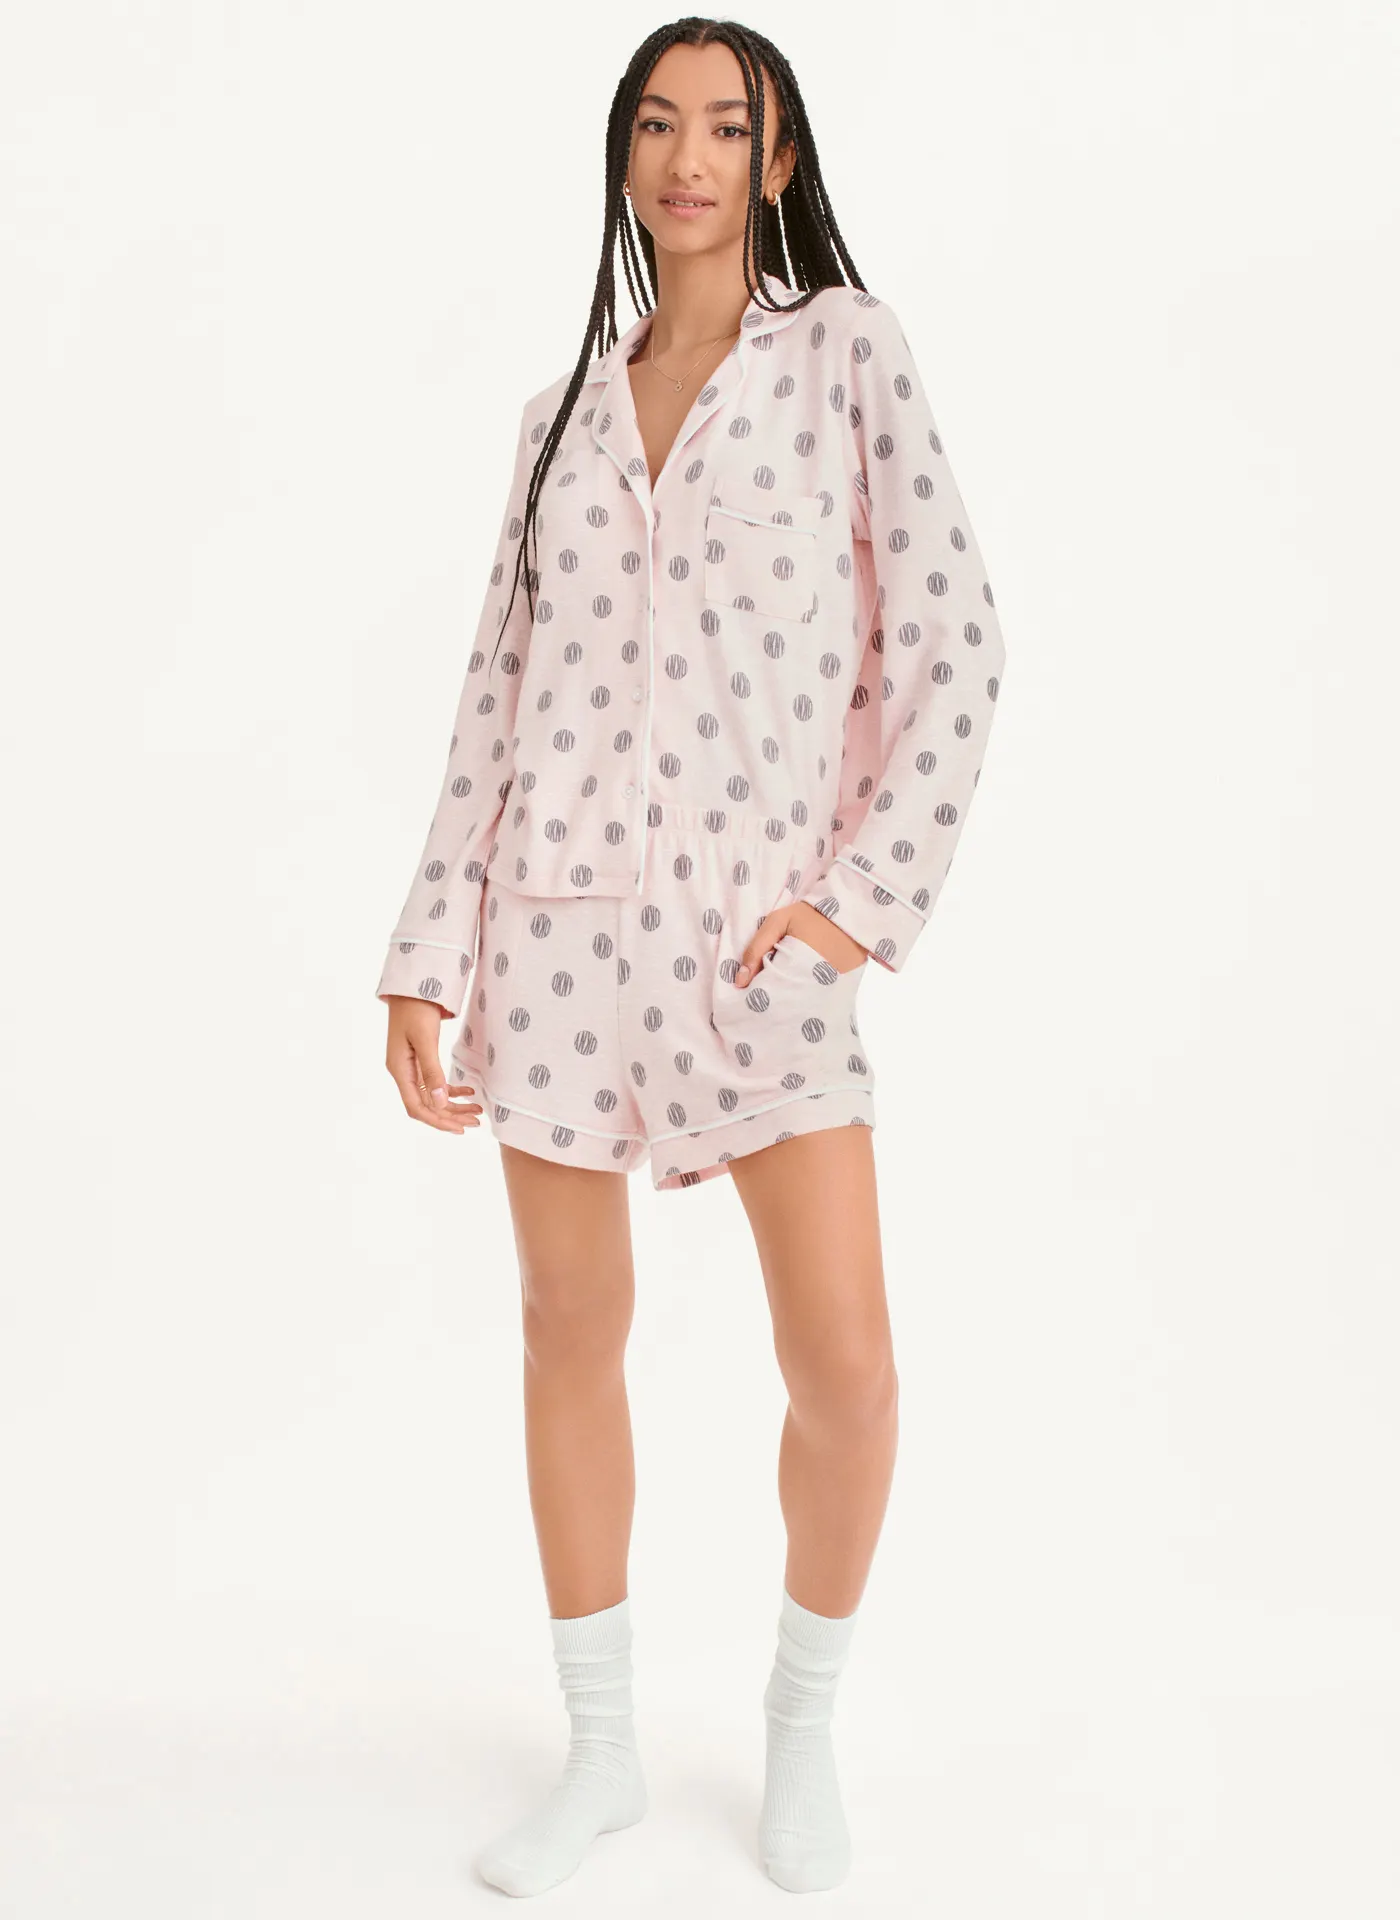 Пижама DKNY, шорты, рубашка, длинный рукав, пояс на резинке, карманы, размер L, розовый - фотография № 1